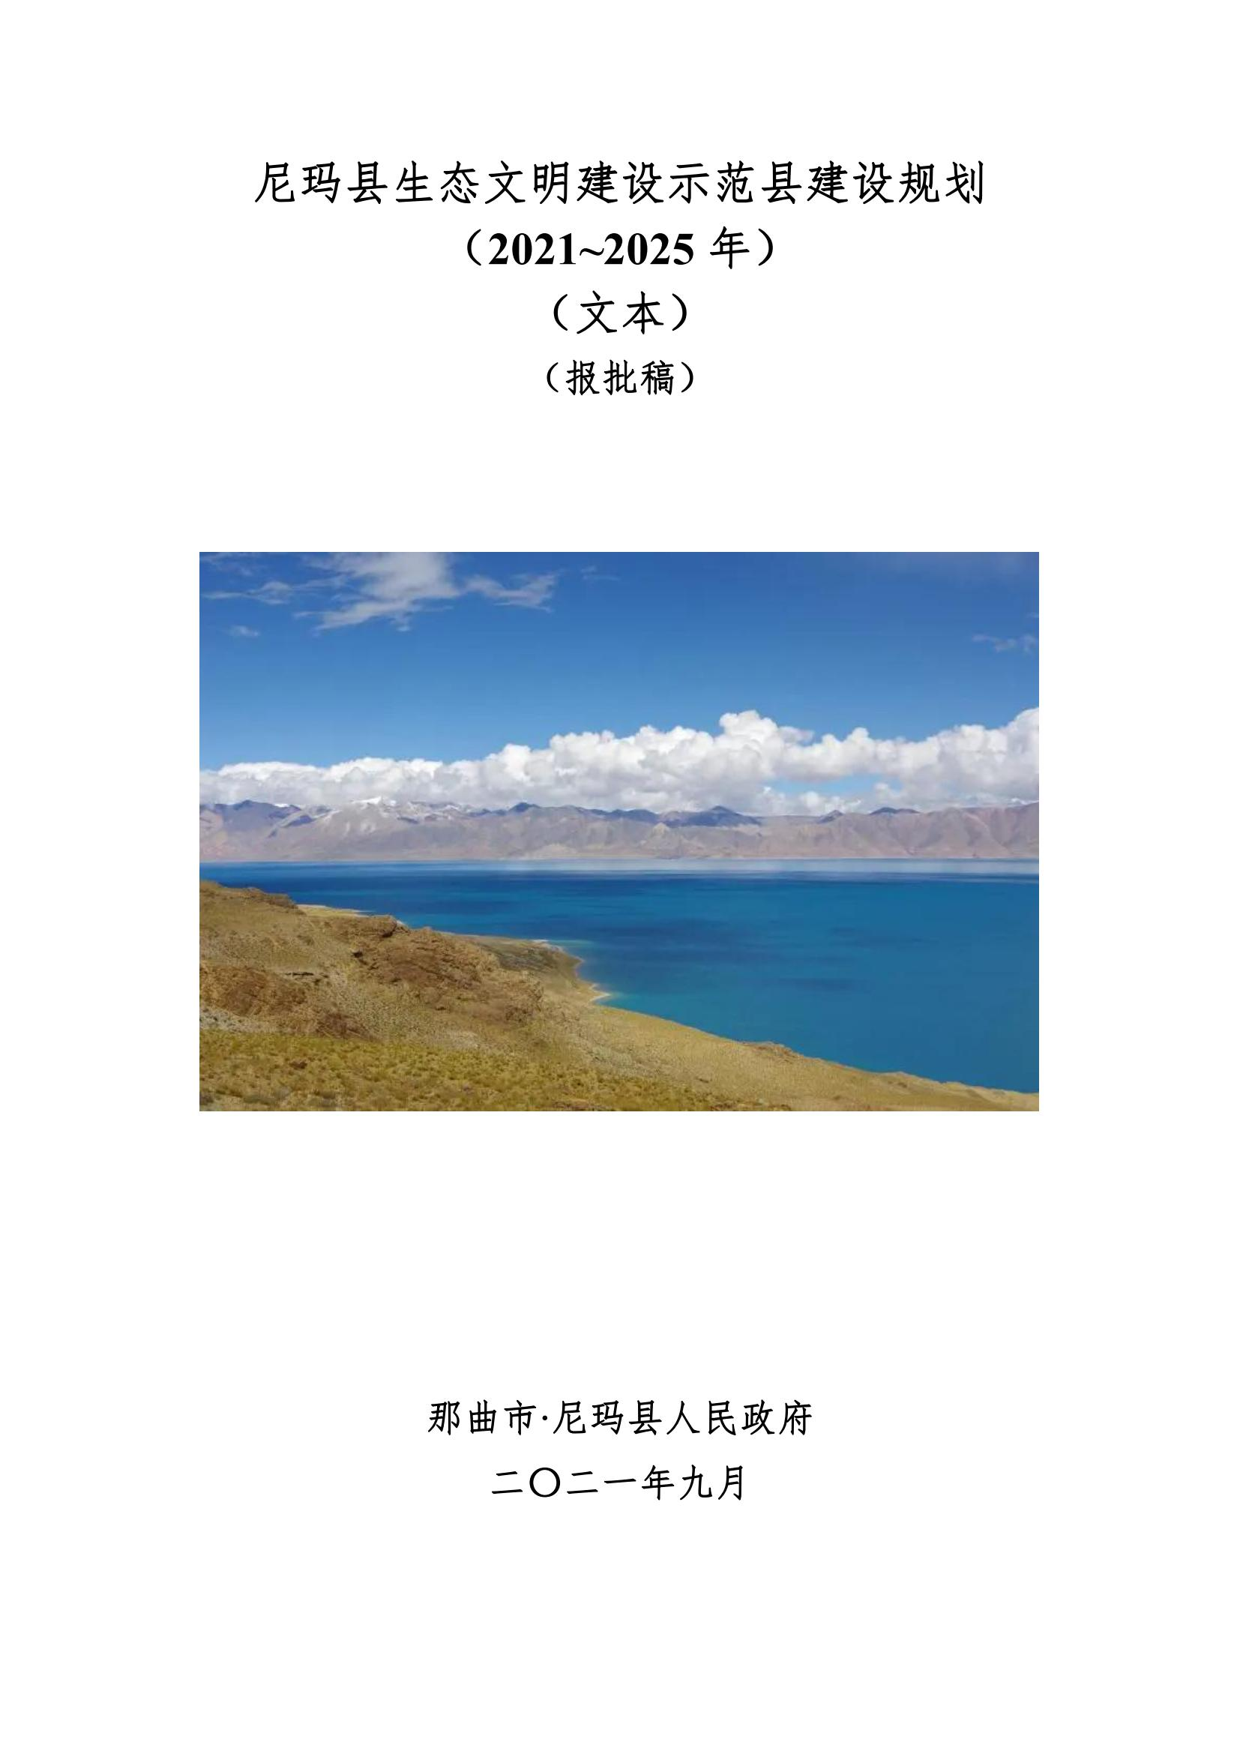 西藏自治区级生态文明建设示范区建设项目